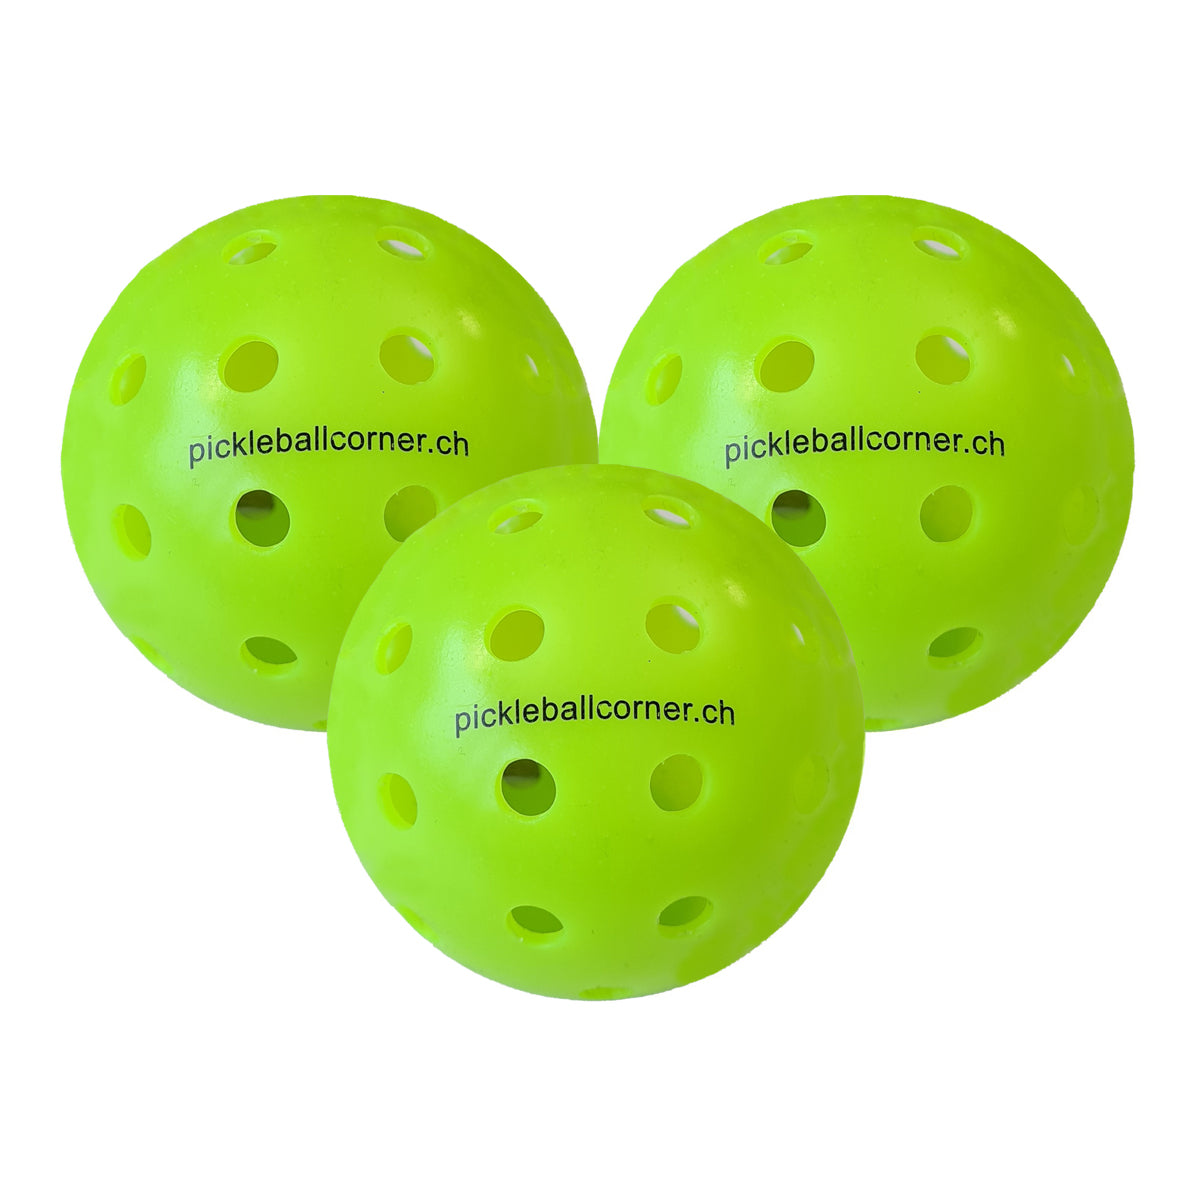 Pickleball Corner PC-1 Outdoor Pickleball Ball in Farbe Lime-Grün abgebildet im Dreierpack.